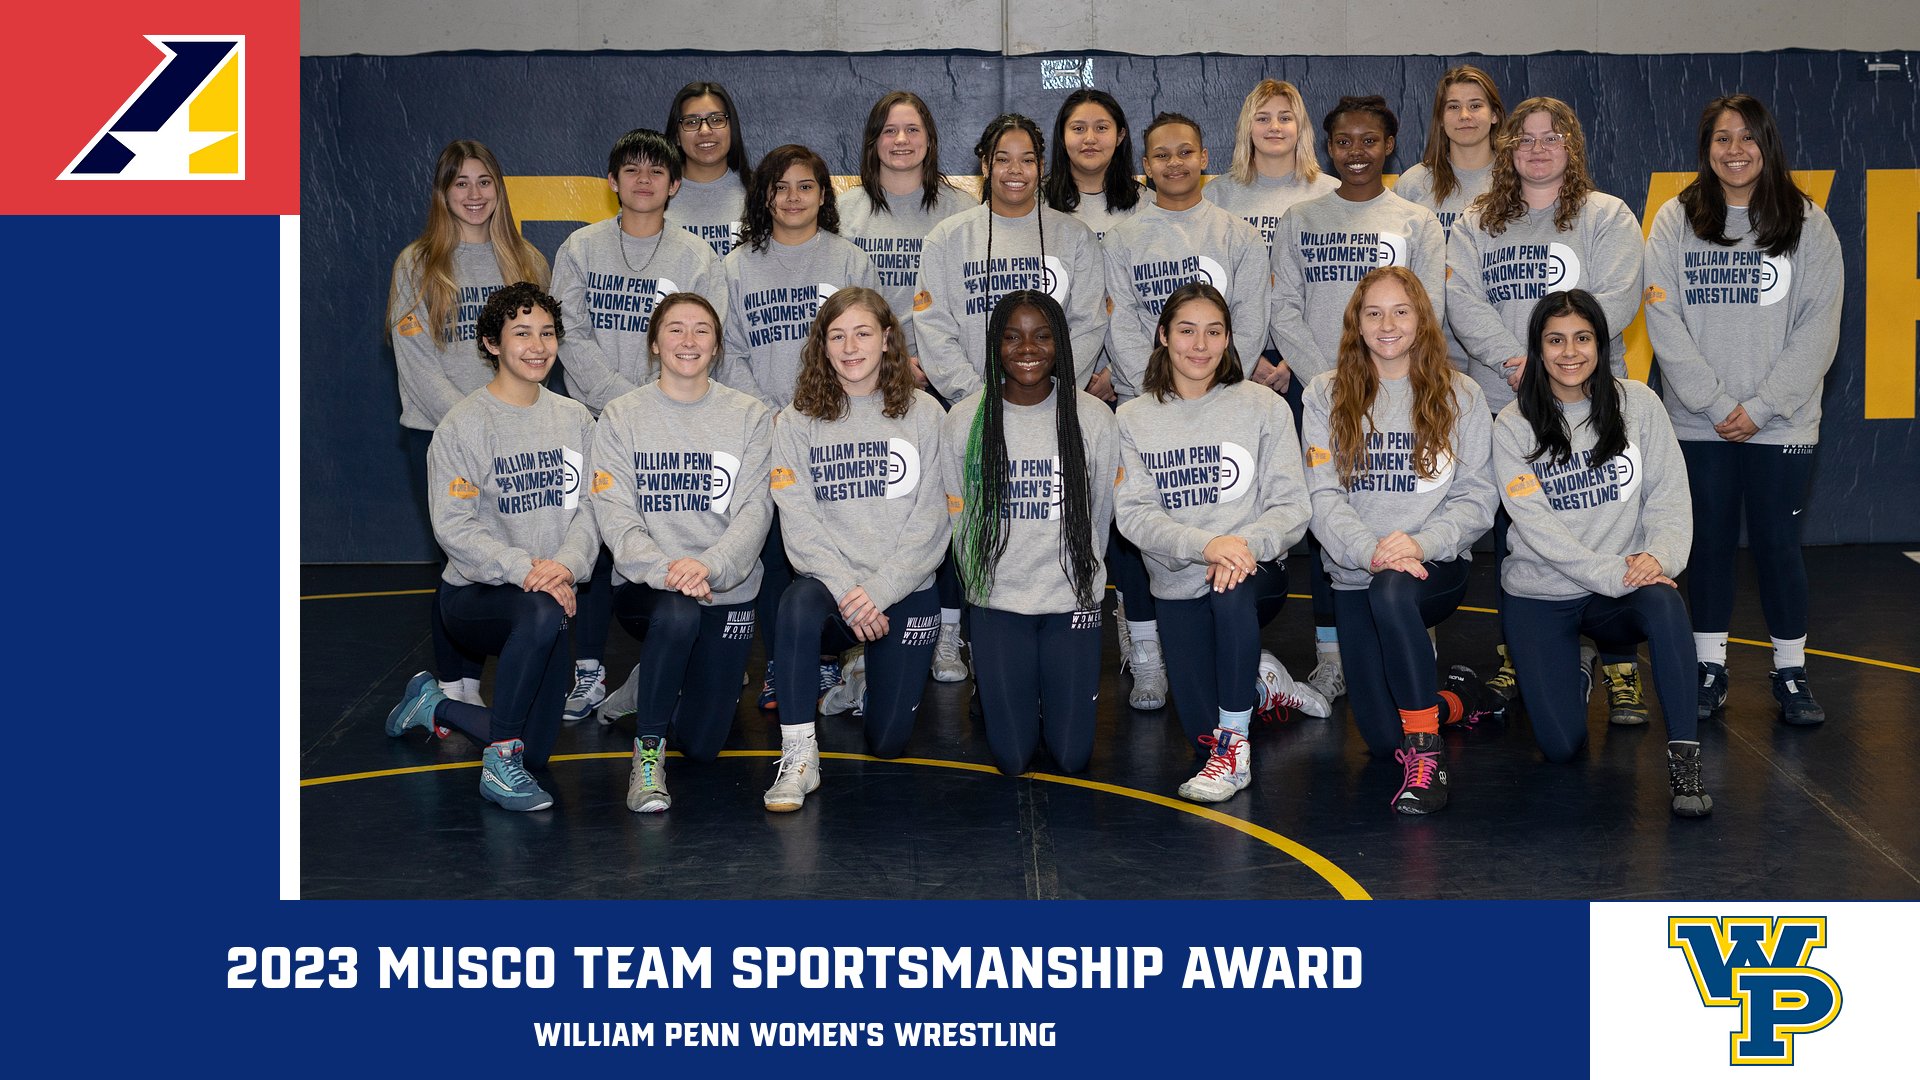 William Penn Women’s Wrestling Named 2023 Musco Team Sportsmanship Award Winners